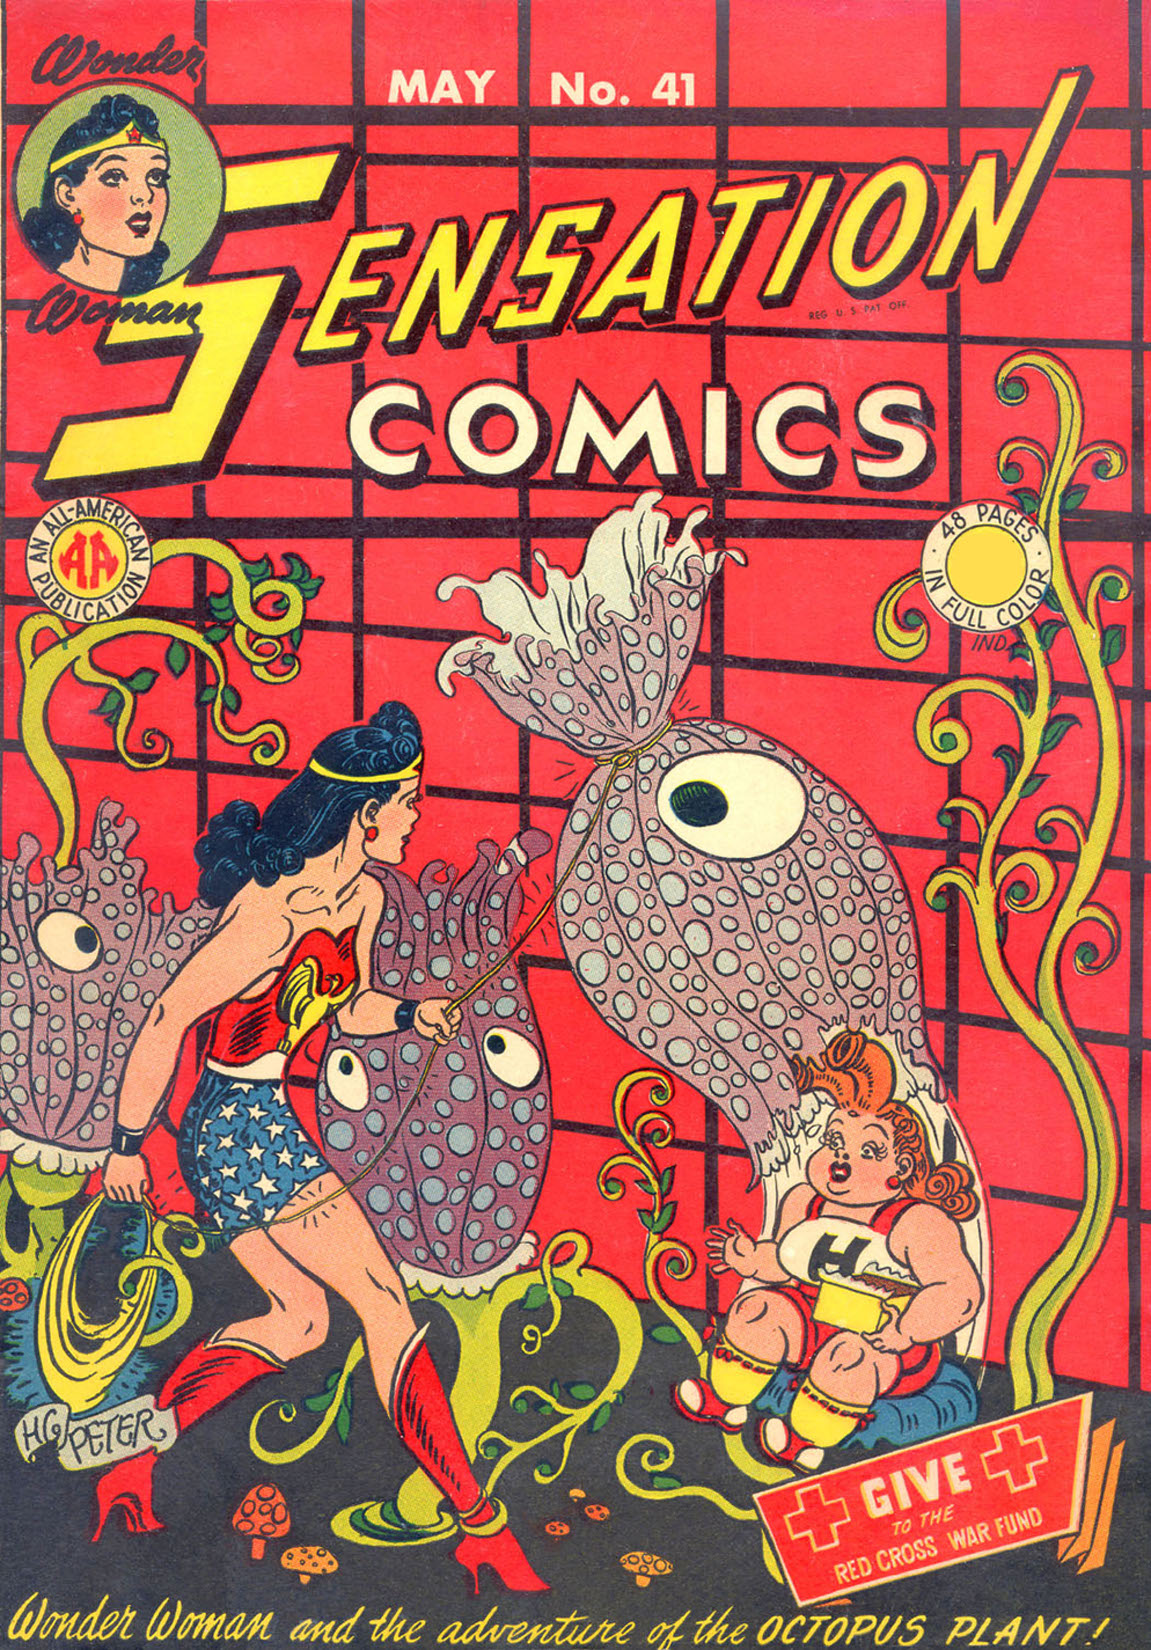 Sensation Comics #41 preview images